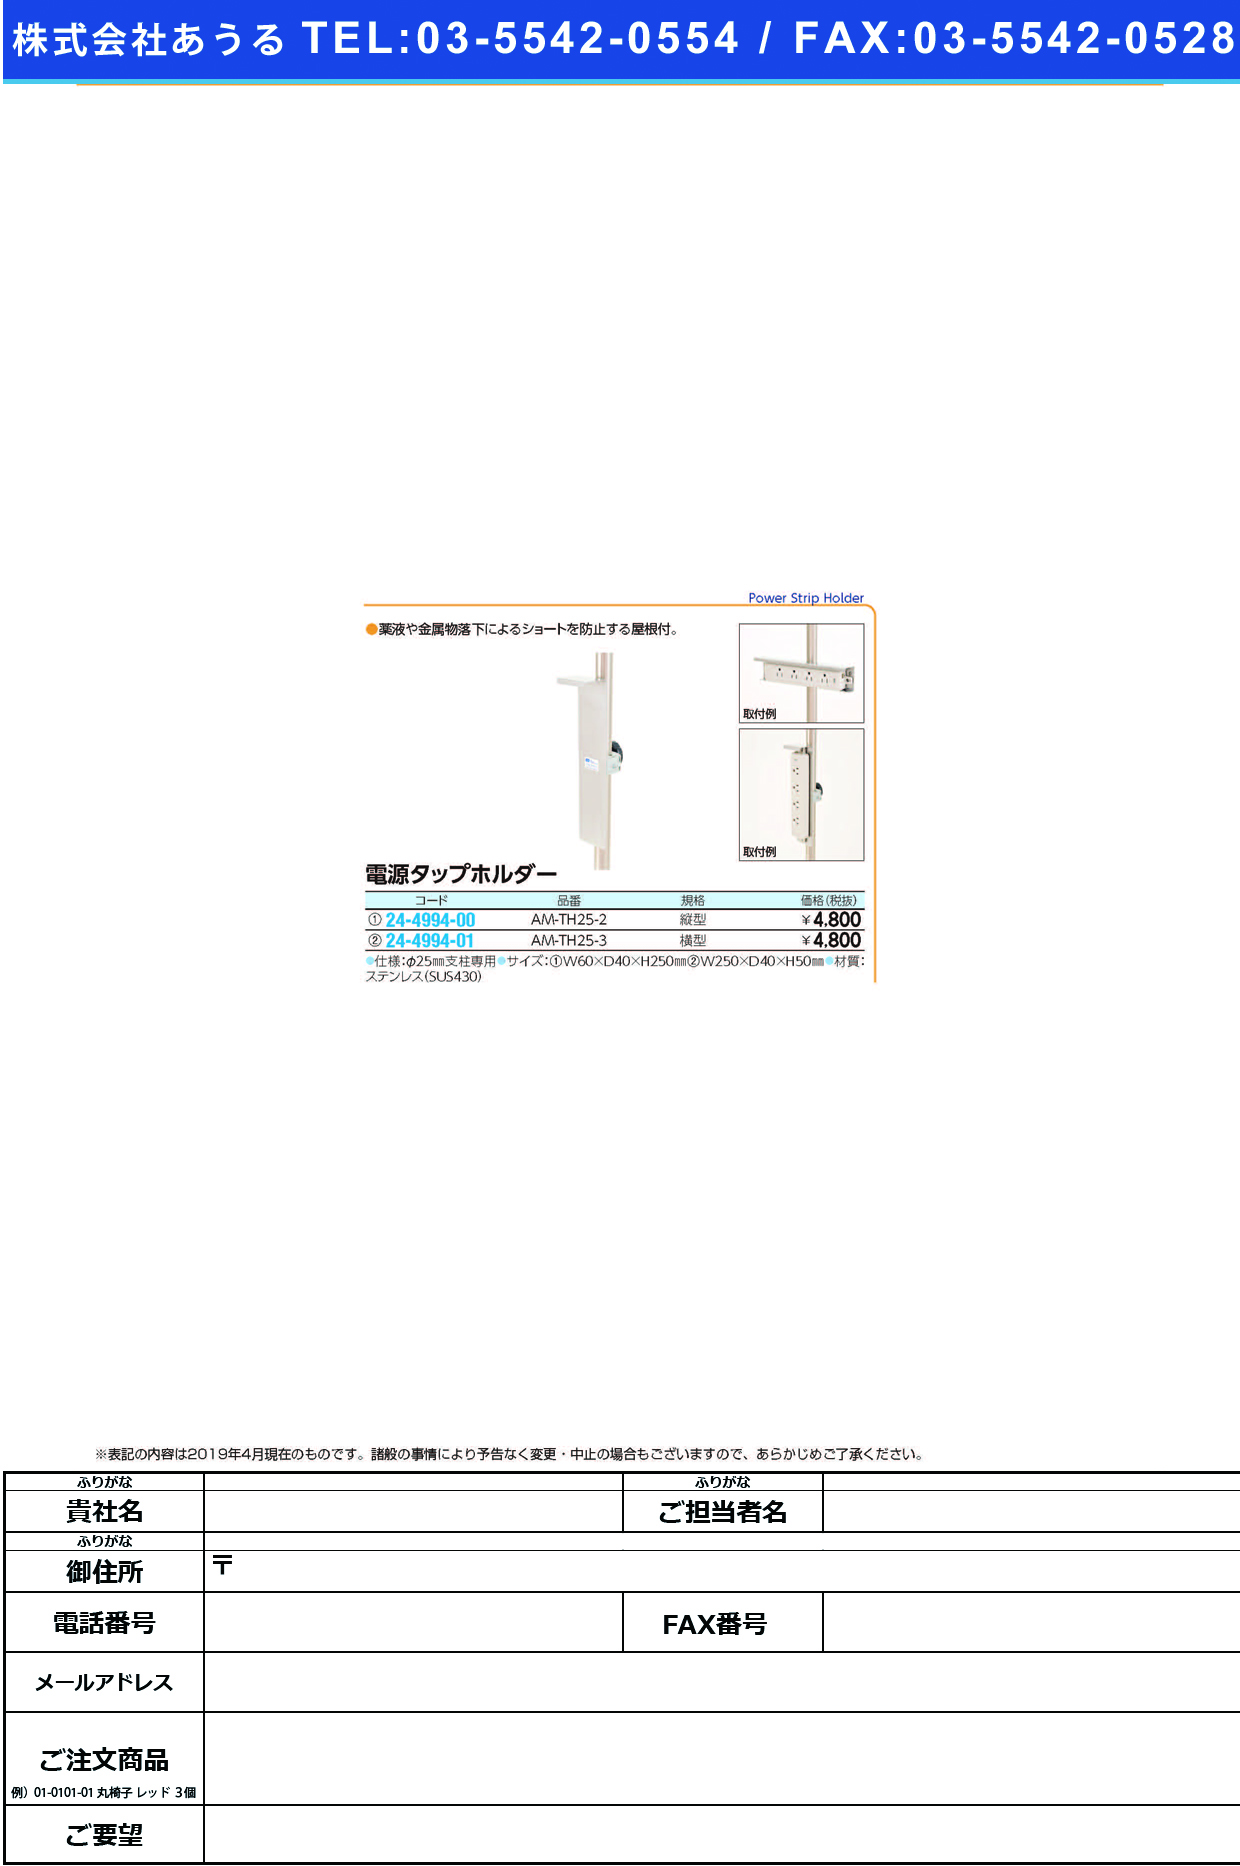 (24-4994-00)電源タップホルダー AM-TH25-2 ﾃﾞﾝｹﾞﾝﾀｯﾌﾟﾎﾙﾀﾞｰ【1個単位】【2019年カタログ商品】